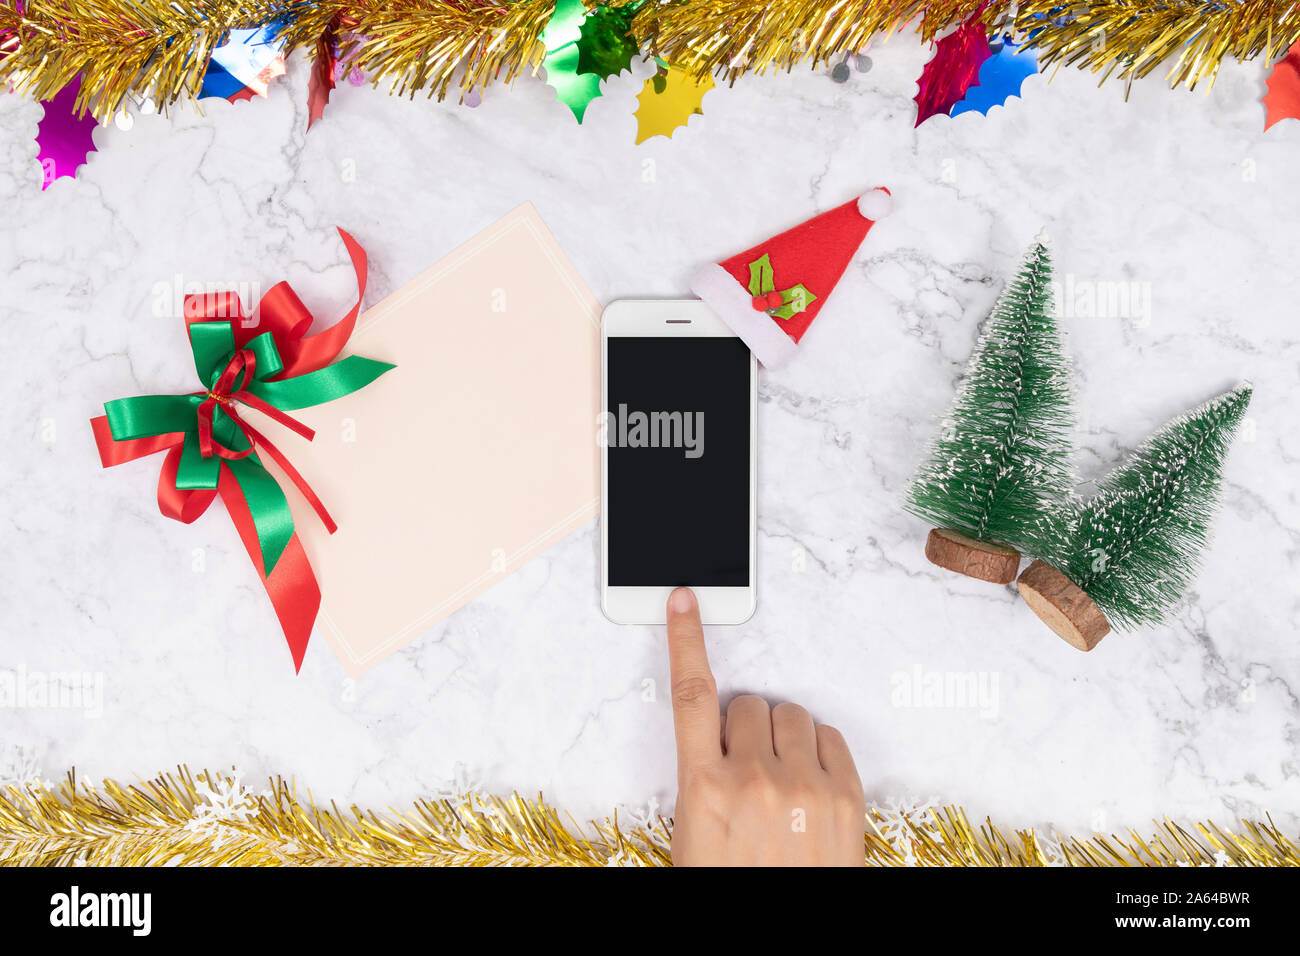 Las compras online en regalos de temporada durante las vacaciones de Navidad. Mujer toque el botón de teléfono móvil decorar con felpa de terciopelo rojo gorro de Papá Noel con puños, blanco Foto de stock